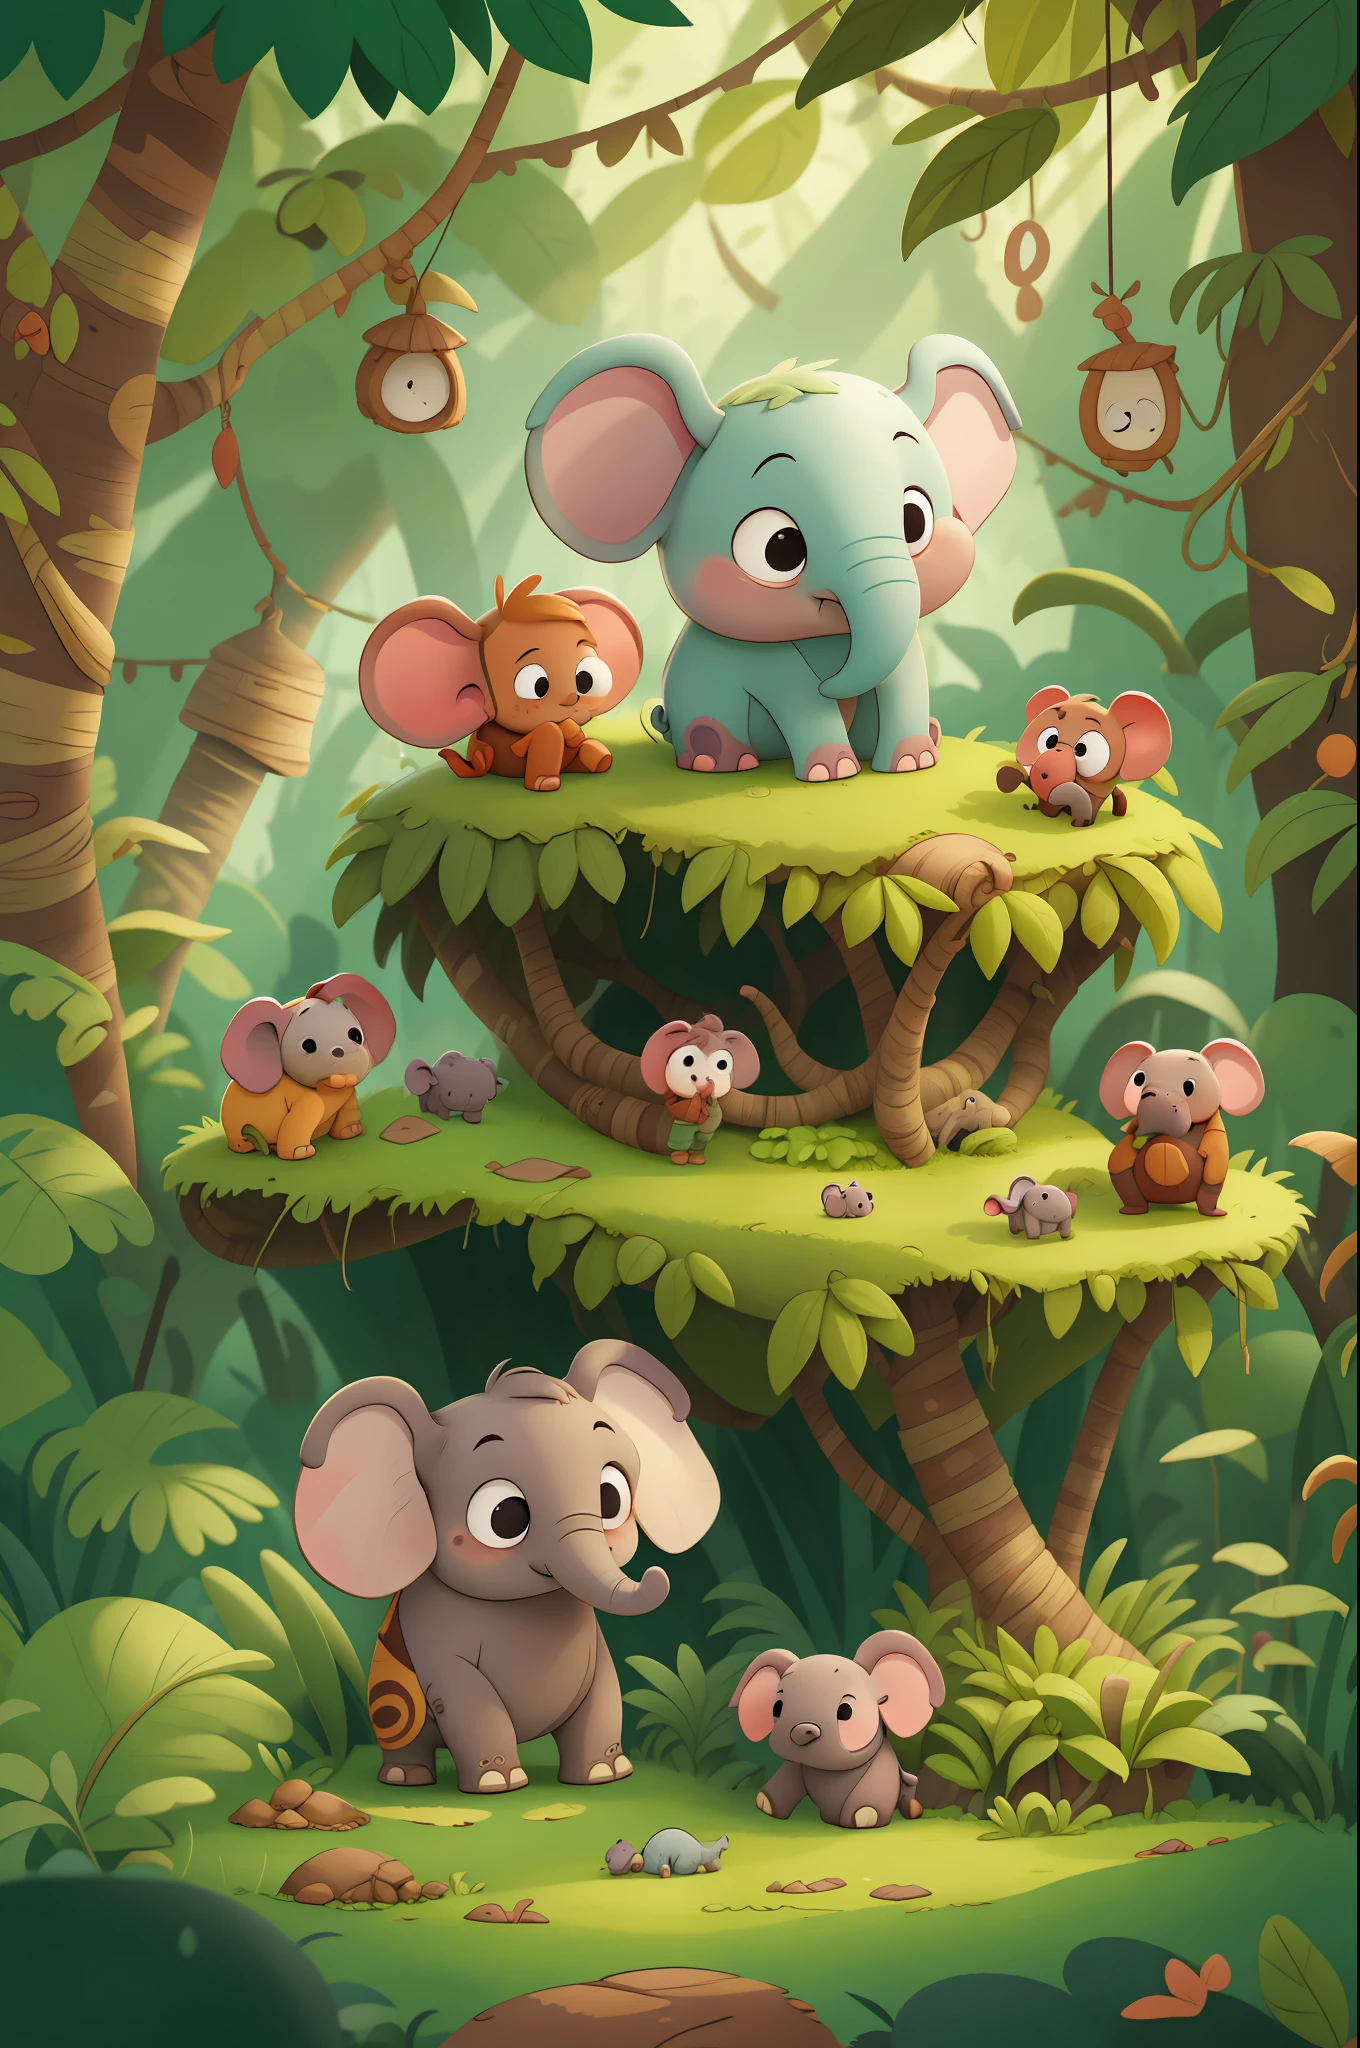 從前，有一頭名叫道格的小象，和他的家人住在叢林裡. 道格很好奇，喜歡探索周遭的世界. 兒童圖書, 在動畫風格中.